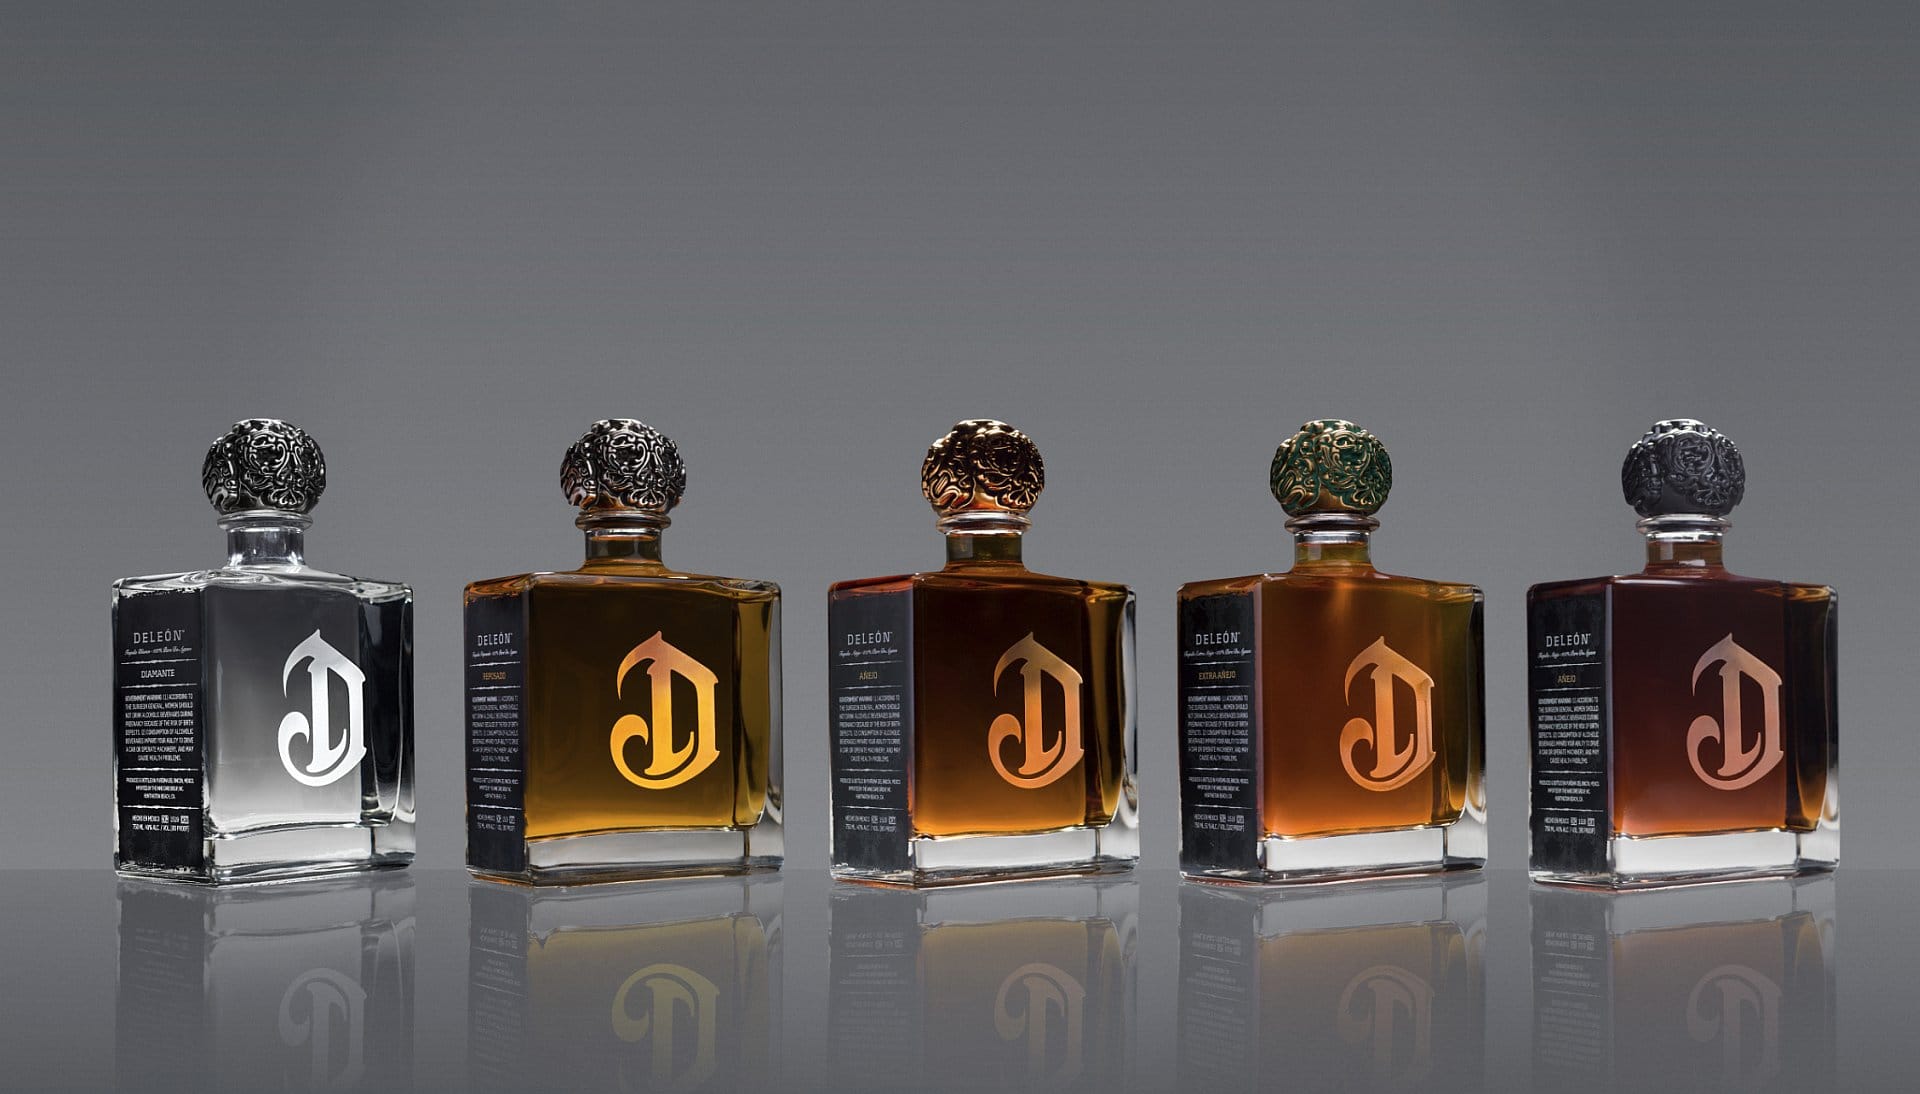 Diese Tequilas der edeln Brennerei Deléon gehören zu den luxuriösten Destillaten der Kategorie. Der günstigste "Diamante" (links) kostet etwa 170 Euro, der "Extra Anejo" (2. v.r.) etwa 360 Euro. Der limitierte "Leona" kostet noch ein wenig mehr: Er ist für etwa 850 Euro zu haben.